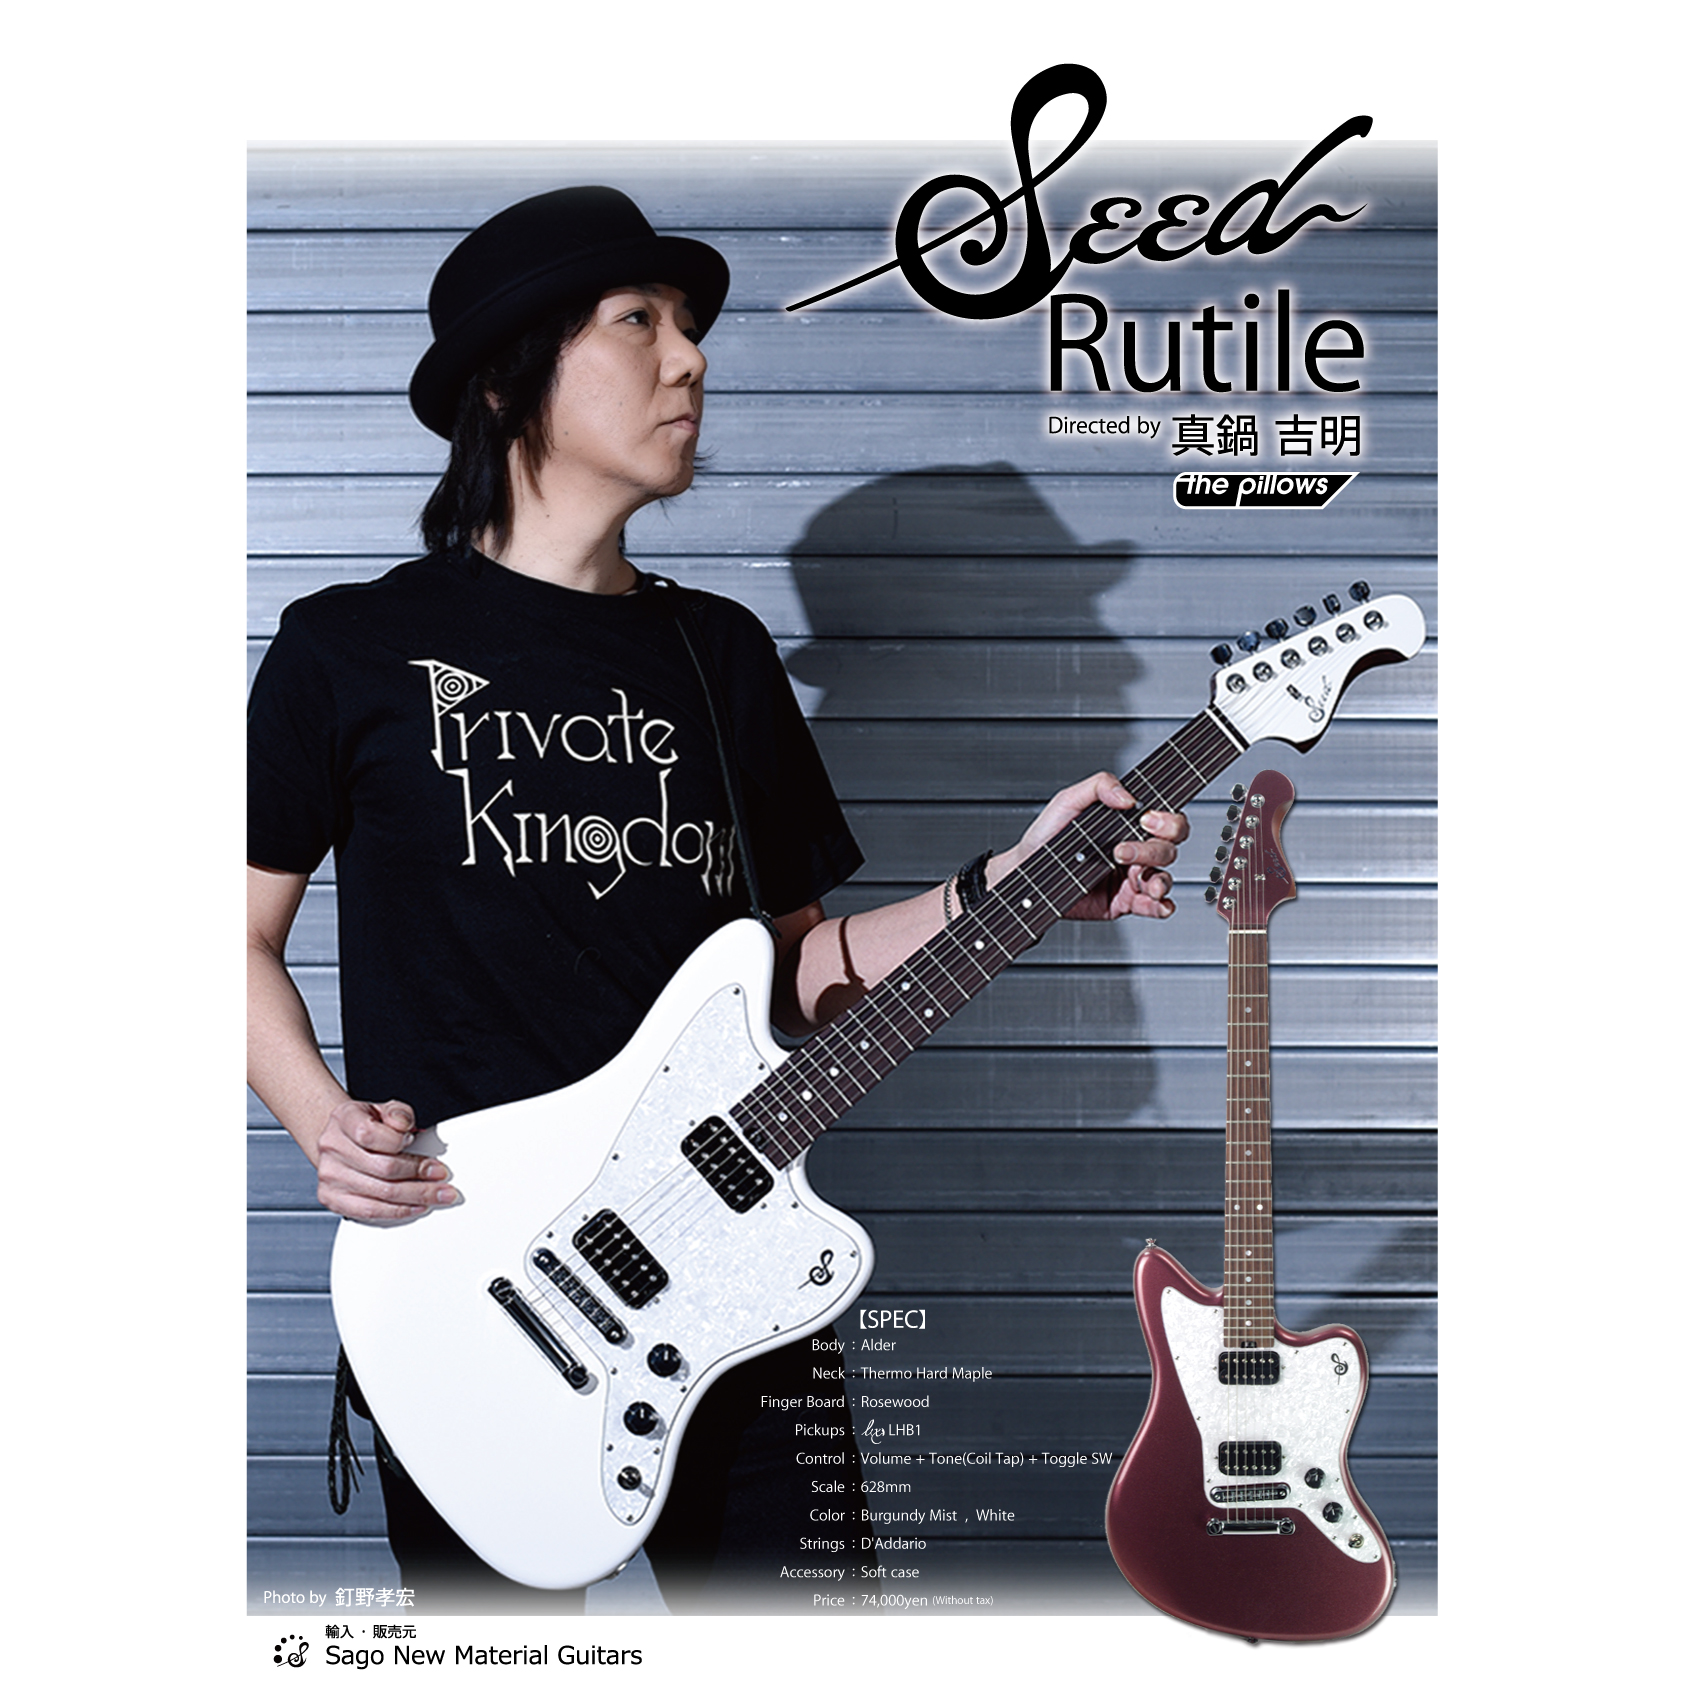 初心者ギタリストにオススメ、Seed Rutile | Sago New Material Guitars